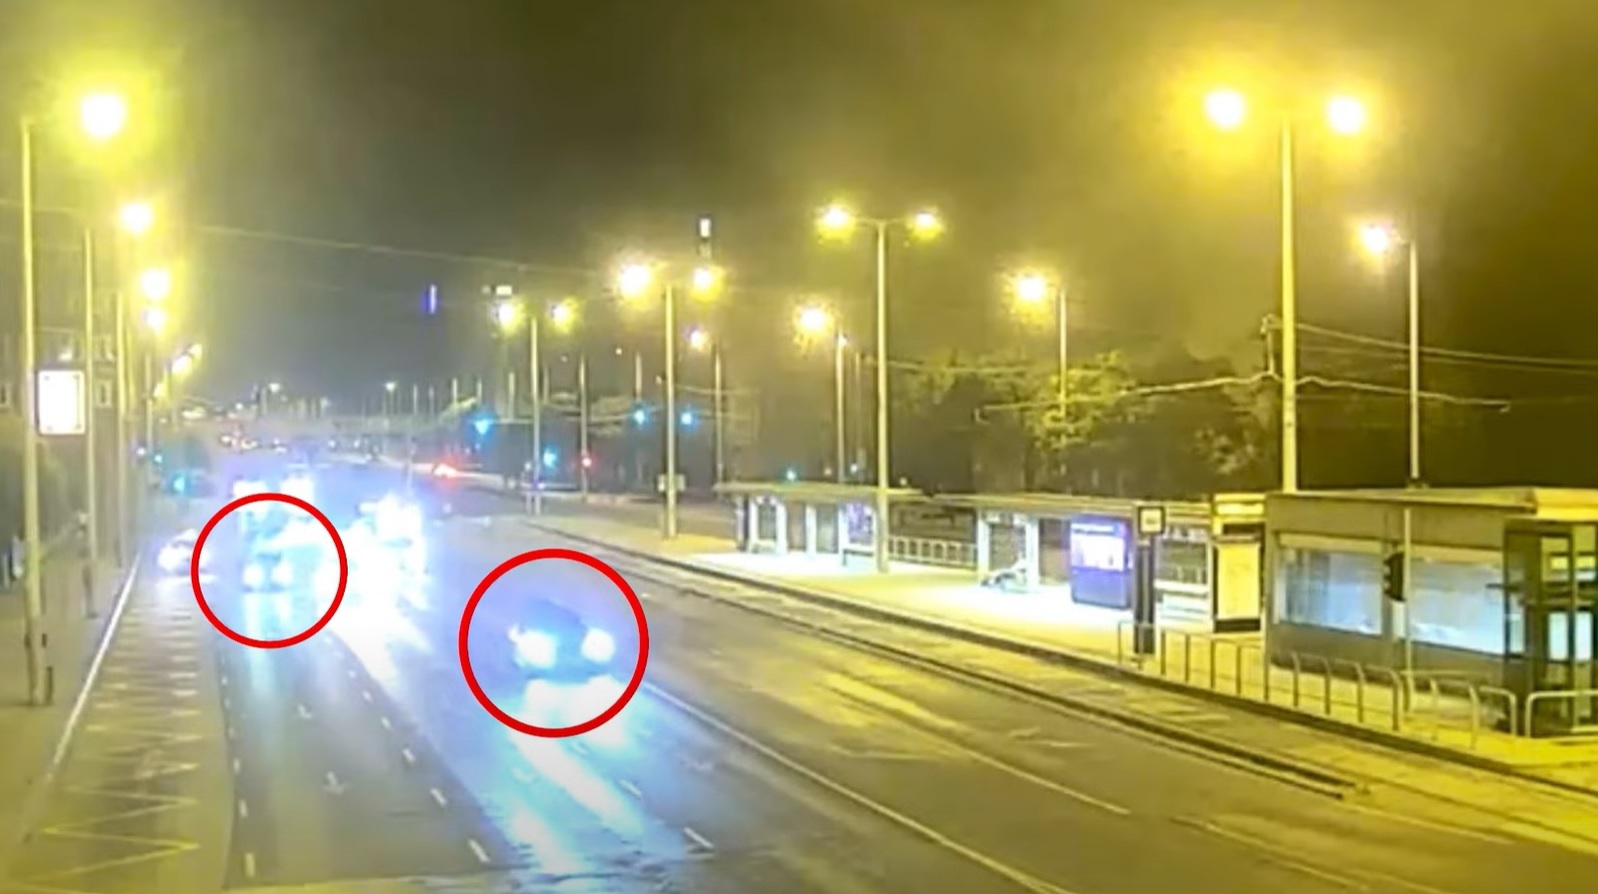 A rendőrség közzétette az Árpád hídi halálos balesetről készült felvételt